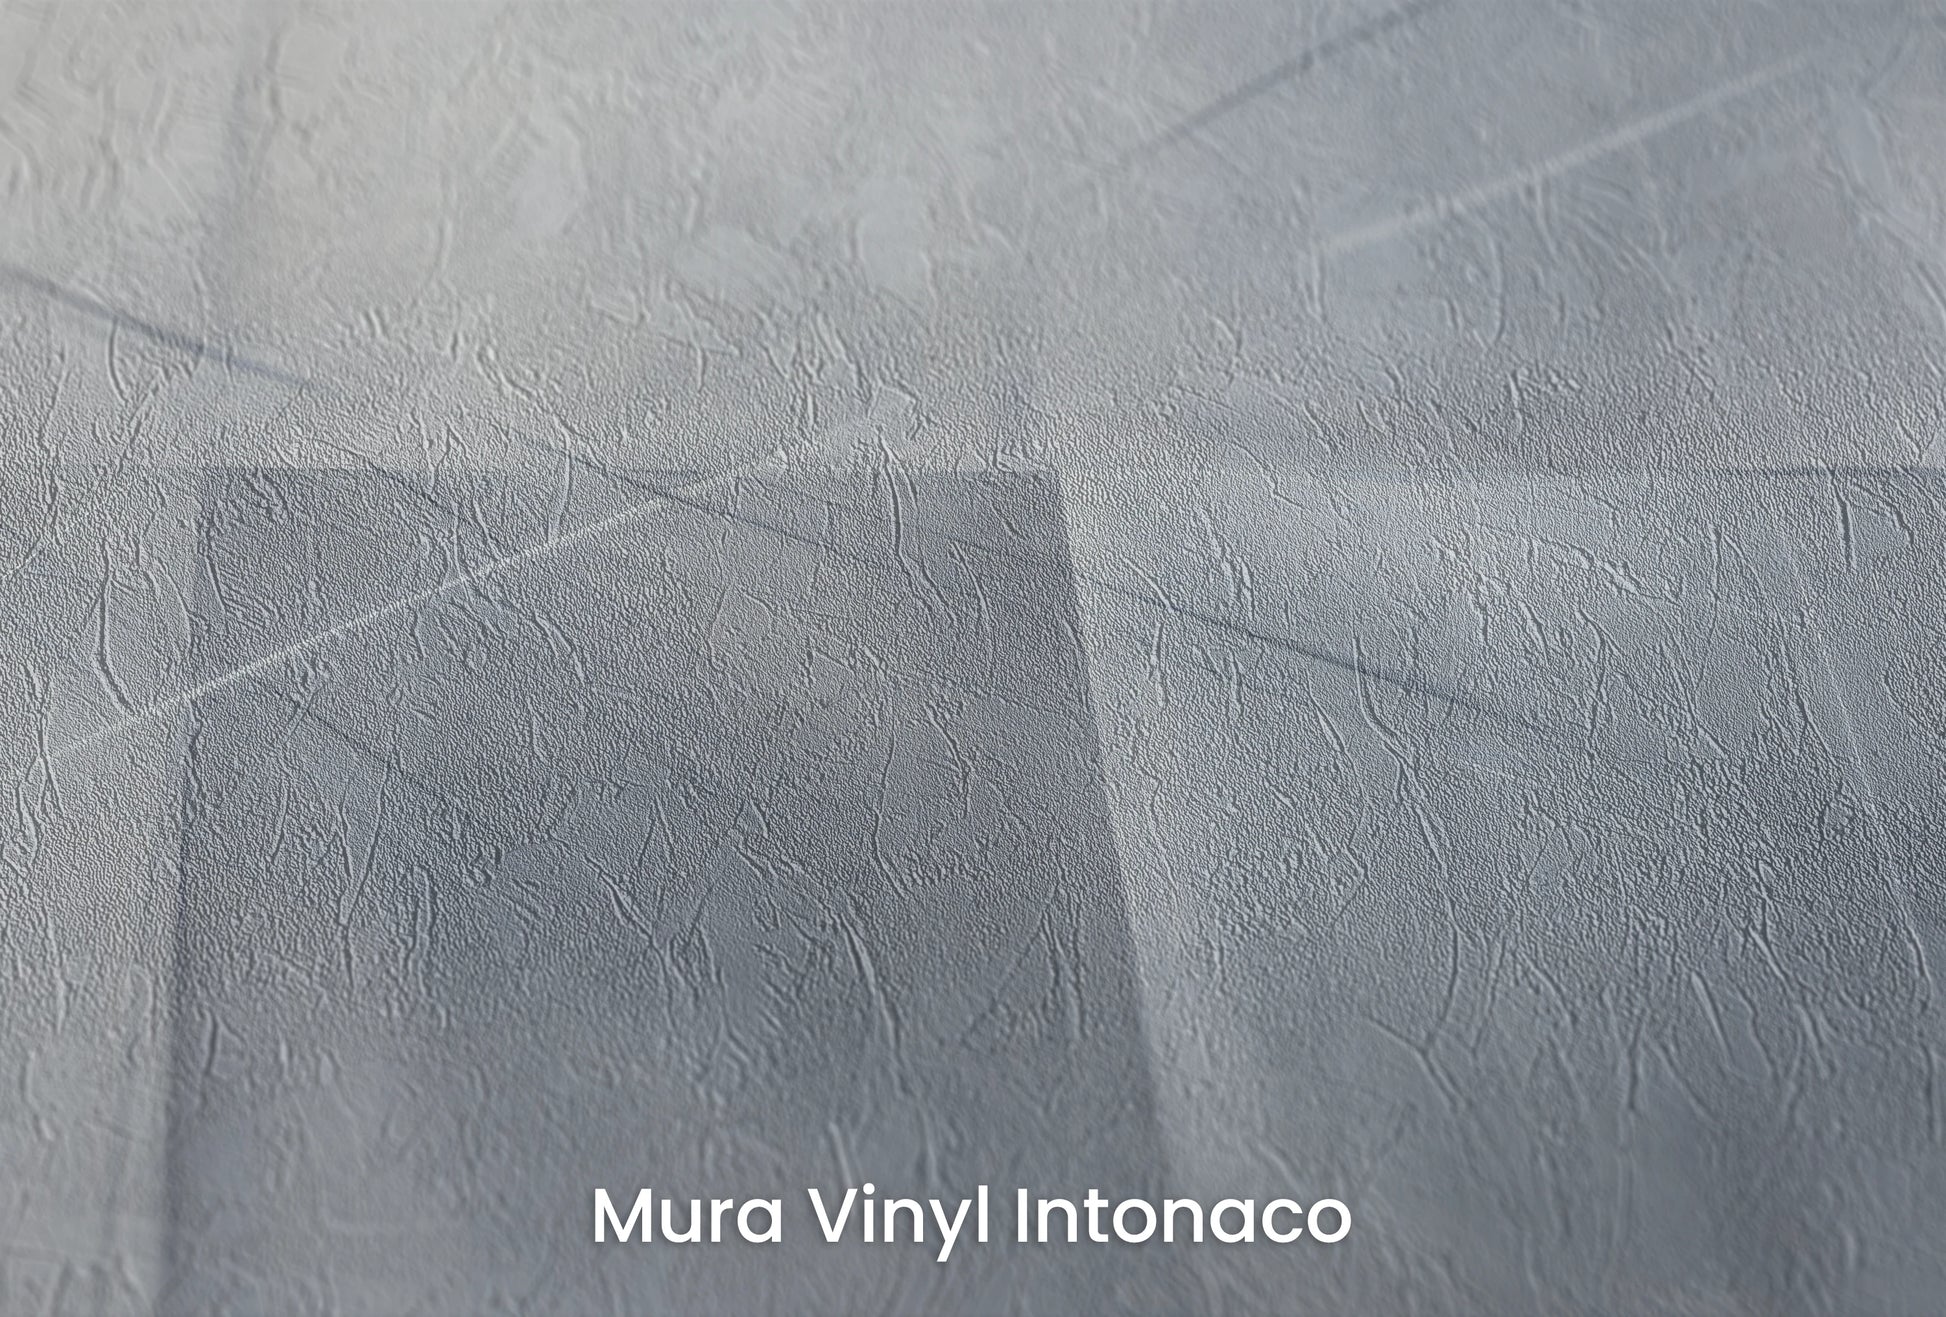 Zbliżenie na artystyczną fototapetę o nazwie Urban Scape na podłożu Mura Vinyl Intonaco - struktura tartego tynku.